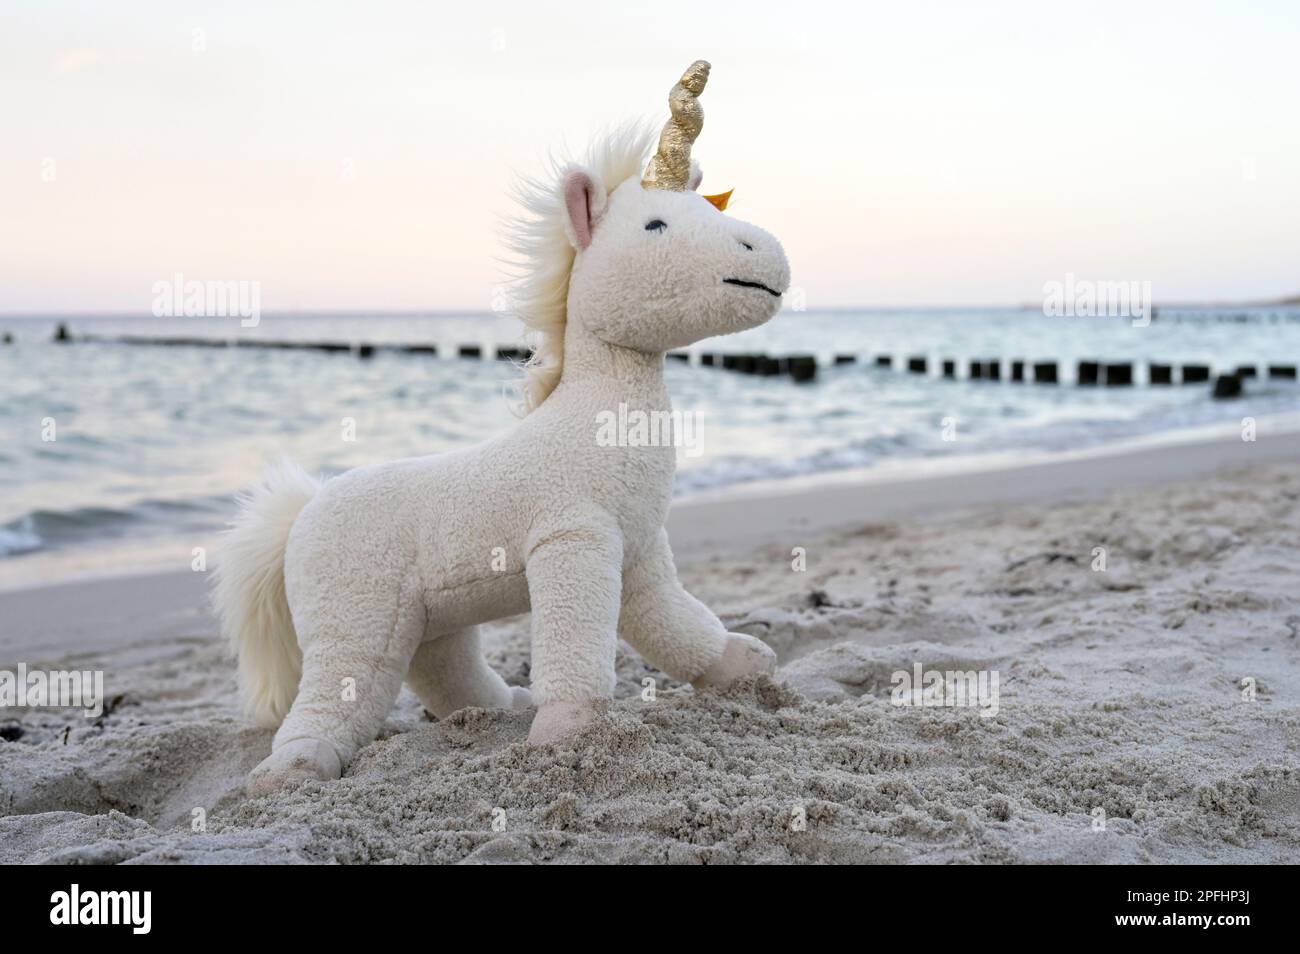 DEUTSCHLAND, Insel Rügen, ostsee, Spielzeug Unicorn am Strand, Unicorne ist ein mythisches Wesen / DEUTSCHLAND, Rügen, Ostsee Strand an der Schaabe, Buhnenreihe, Plüschtier Einhorn am Strand, das Fabelwesen Einhorn steht symbolisch für das Gute Stockfoto